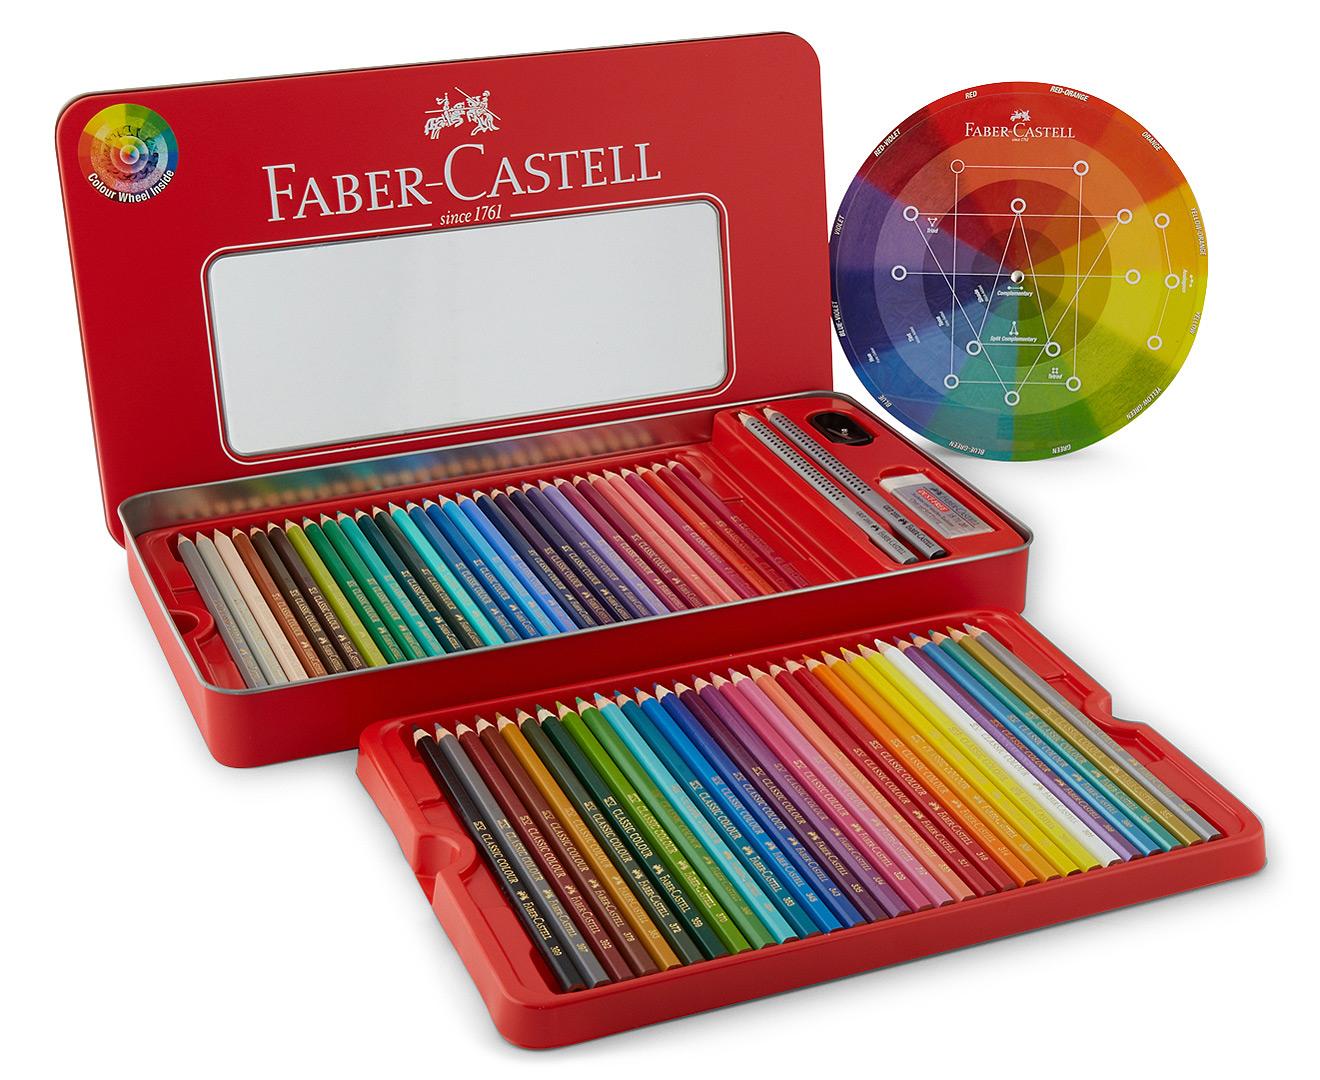 Lápis de Cor Tradicional Superior Faber-Castell  Lister - Lápis de Cor  Azul Índigo Escuro 157 - Polychromos Faber-Castell Redondo - 1un -  Faber-Castell